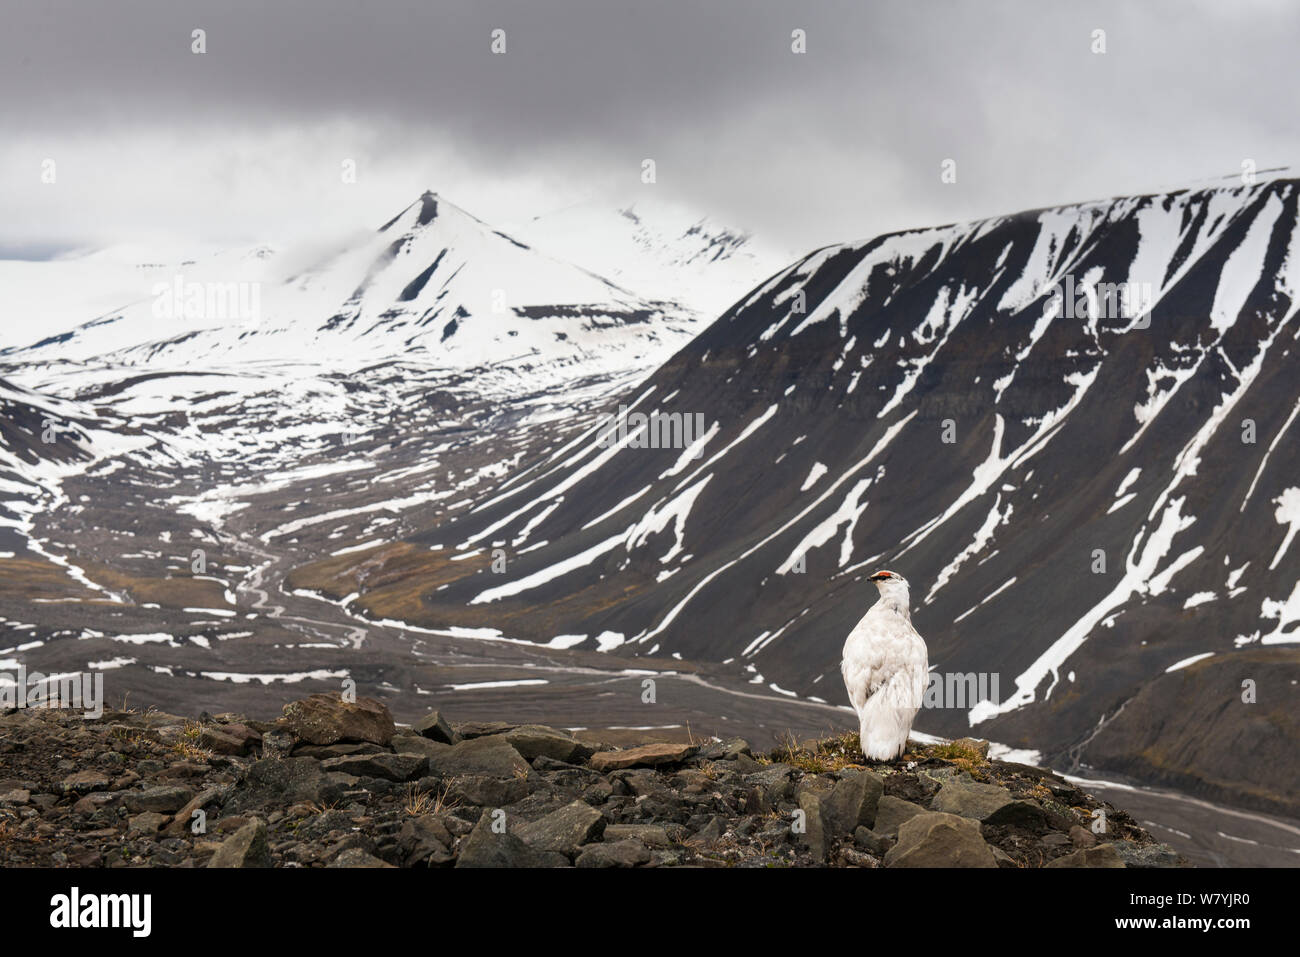 Svalbard ptarmigan (Lagopus muta hyperborea) encore en plumage d'hiver au début de juillet, à l'extérieur de Longyearbyen, Svalbard, Norvège. Banque D'Images